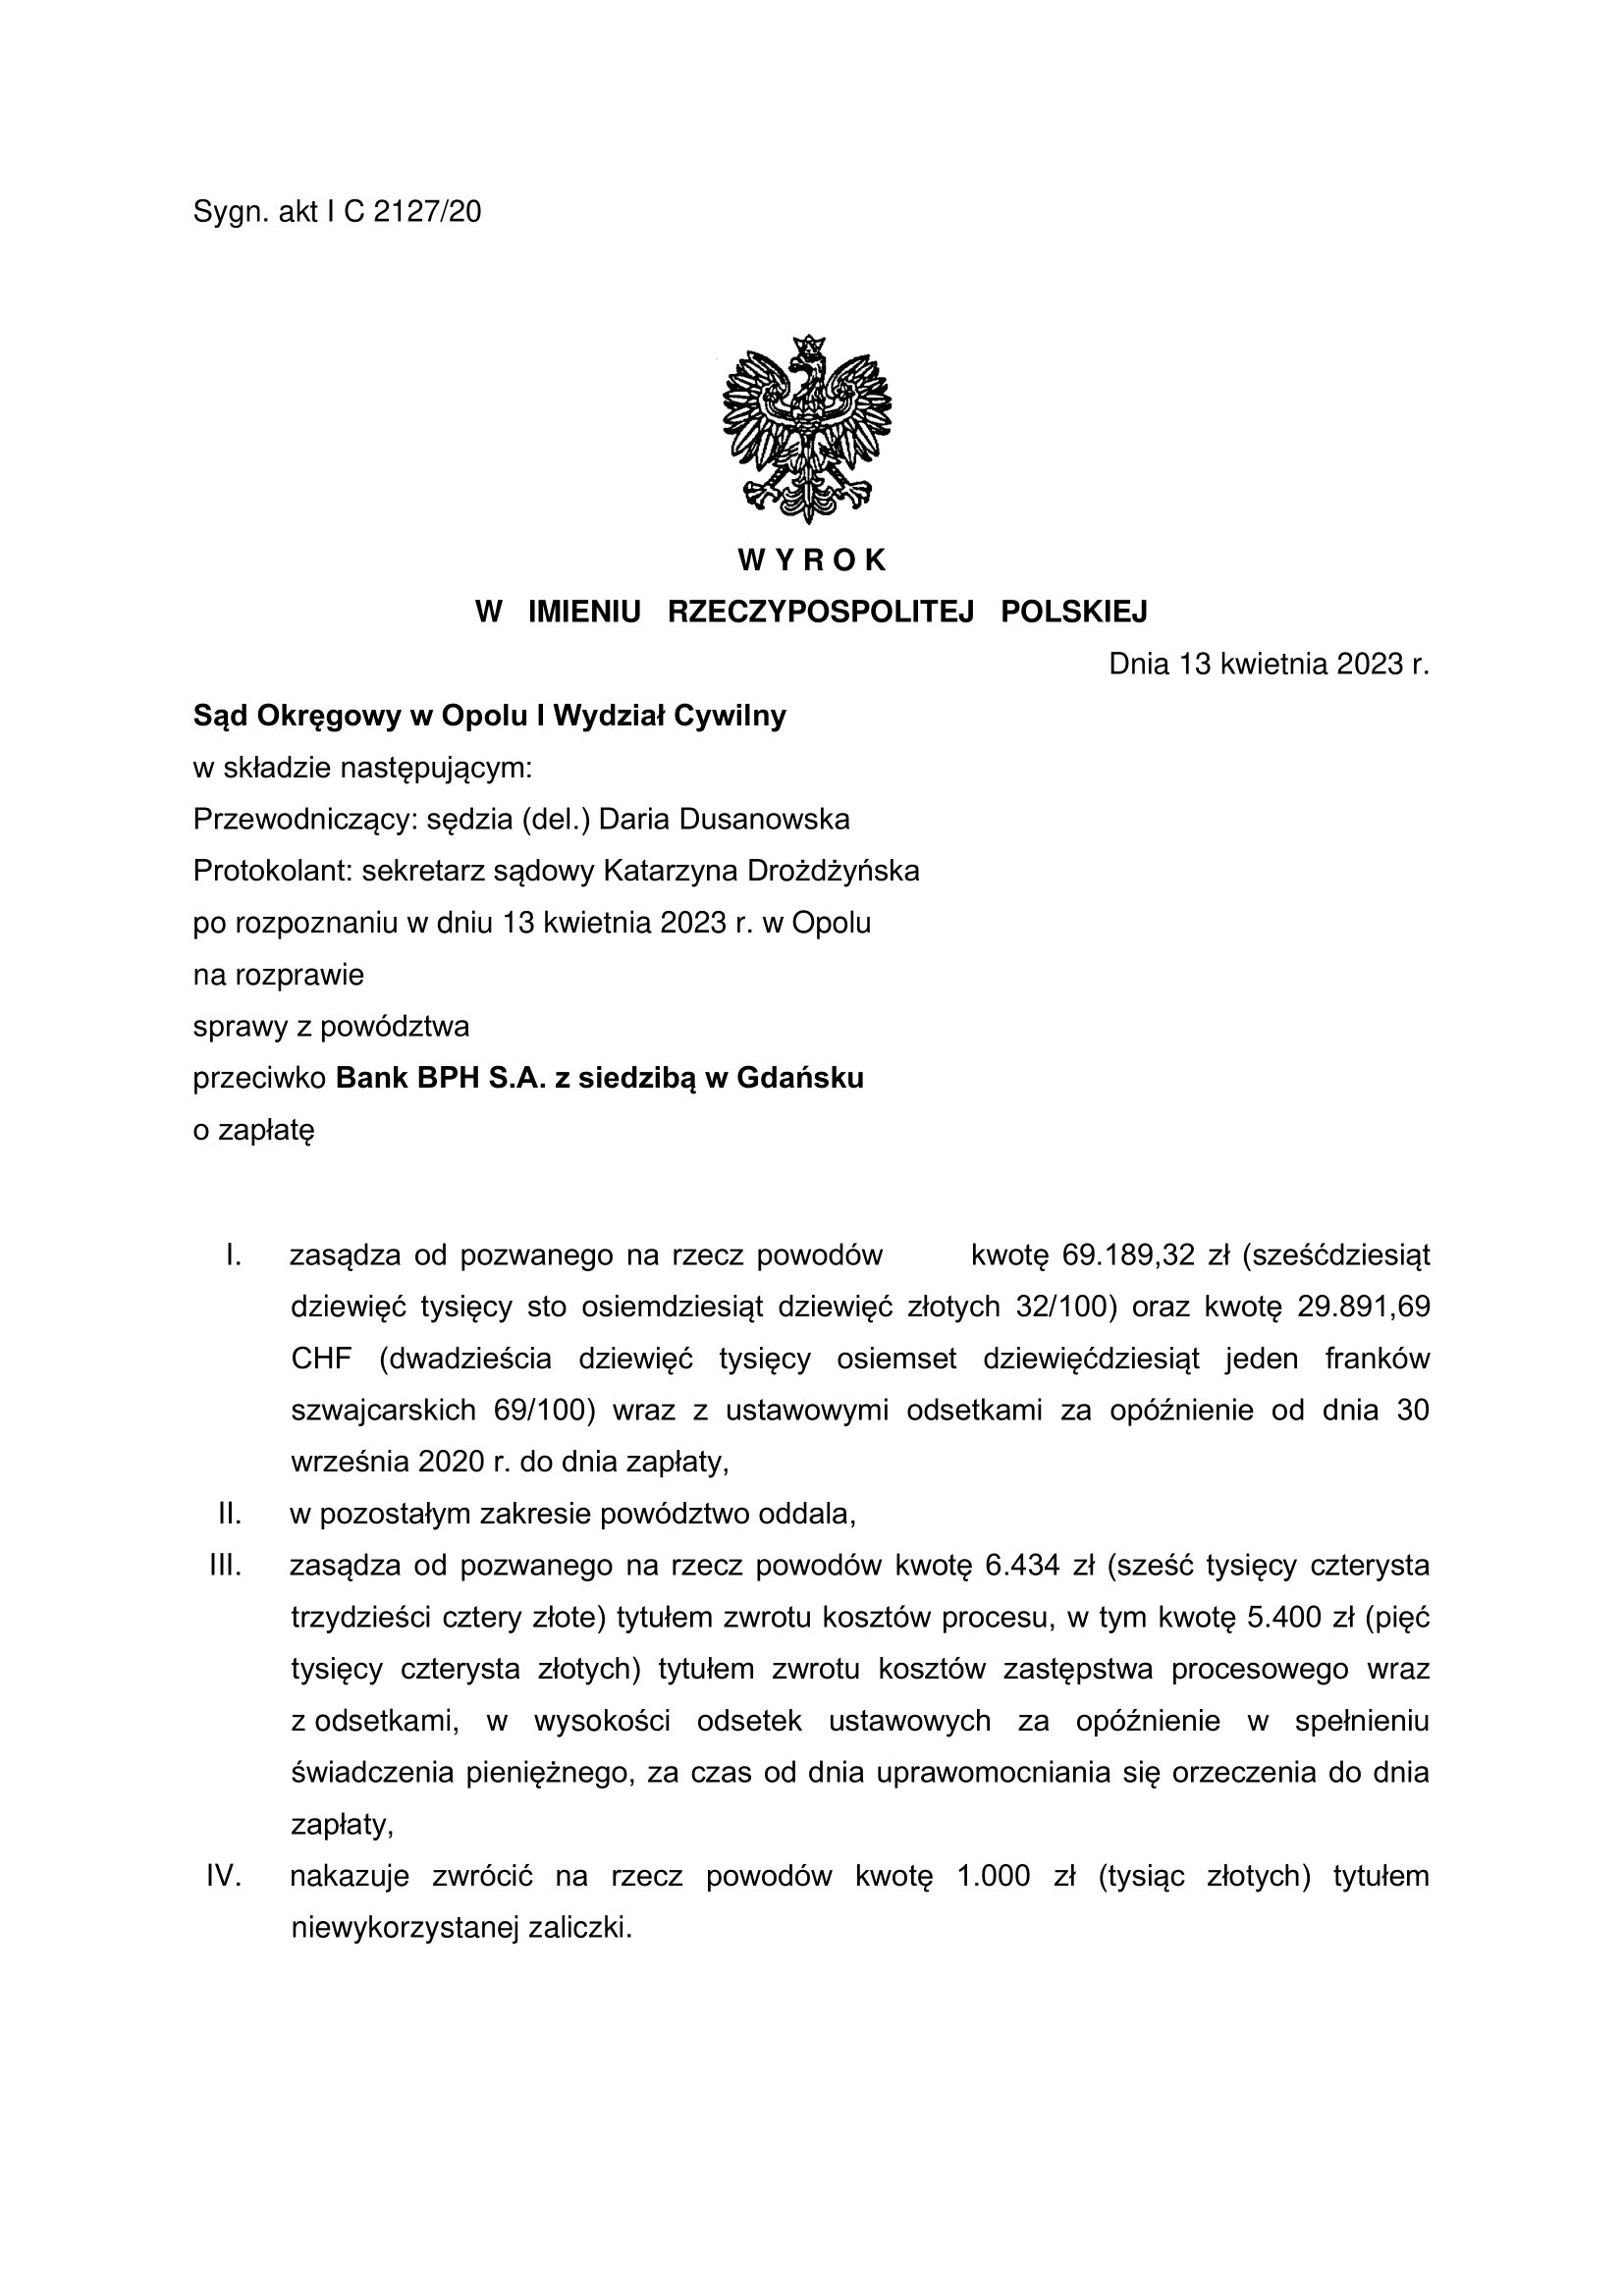 wyrok z Bankiem BPH S.A. z siedzibą w Gdańsku